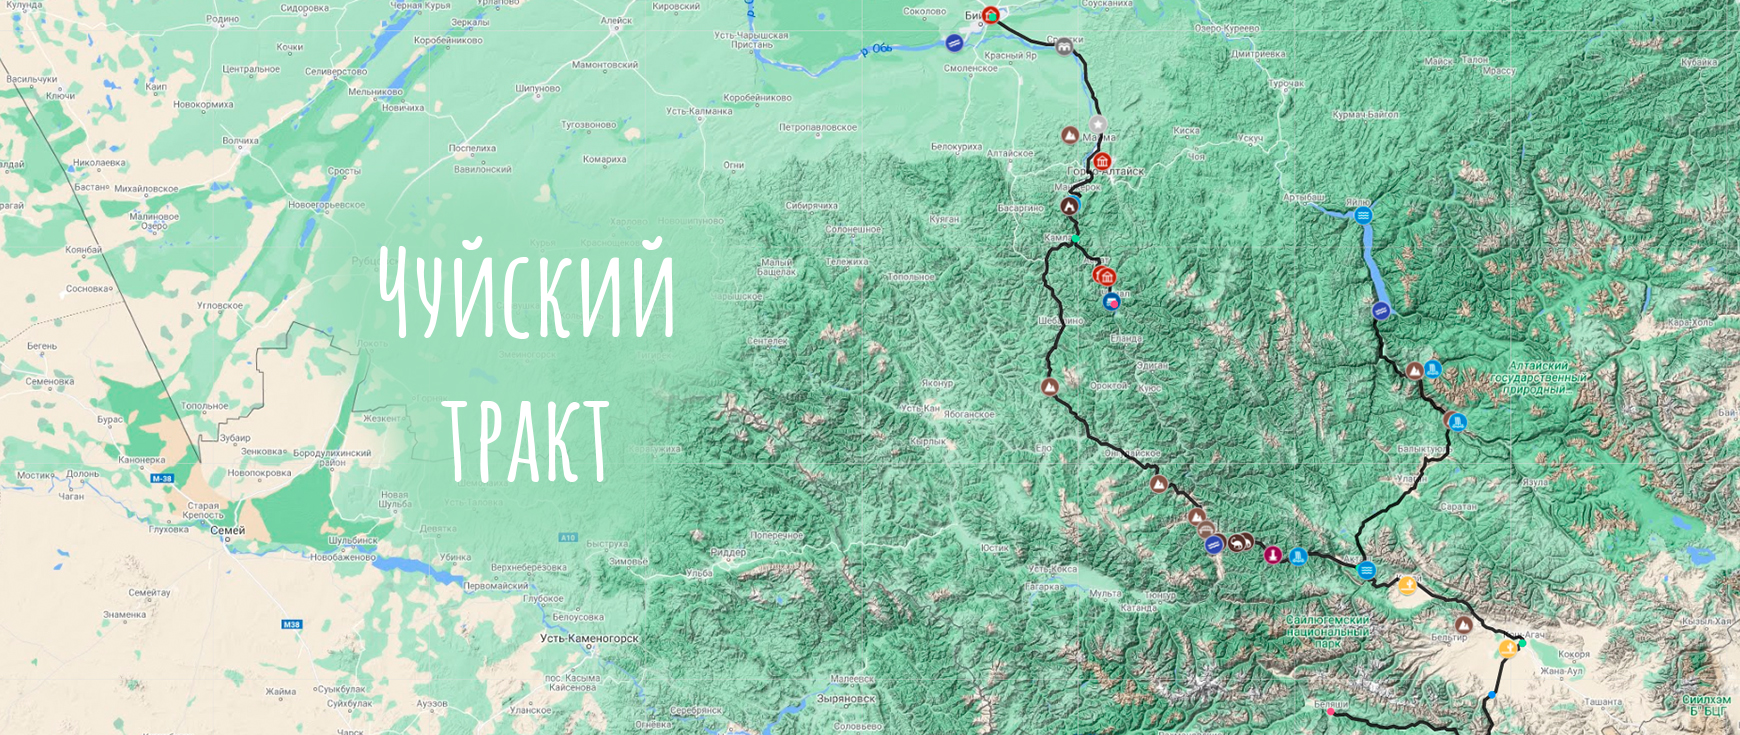 Чуйский тракт - путеводитель по самой красивой дороге России